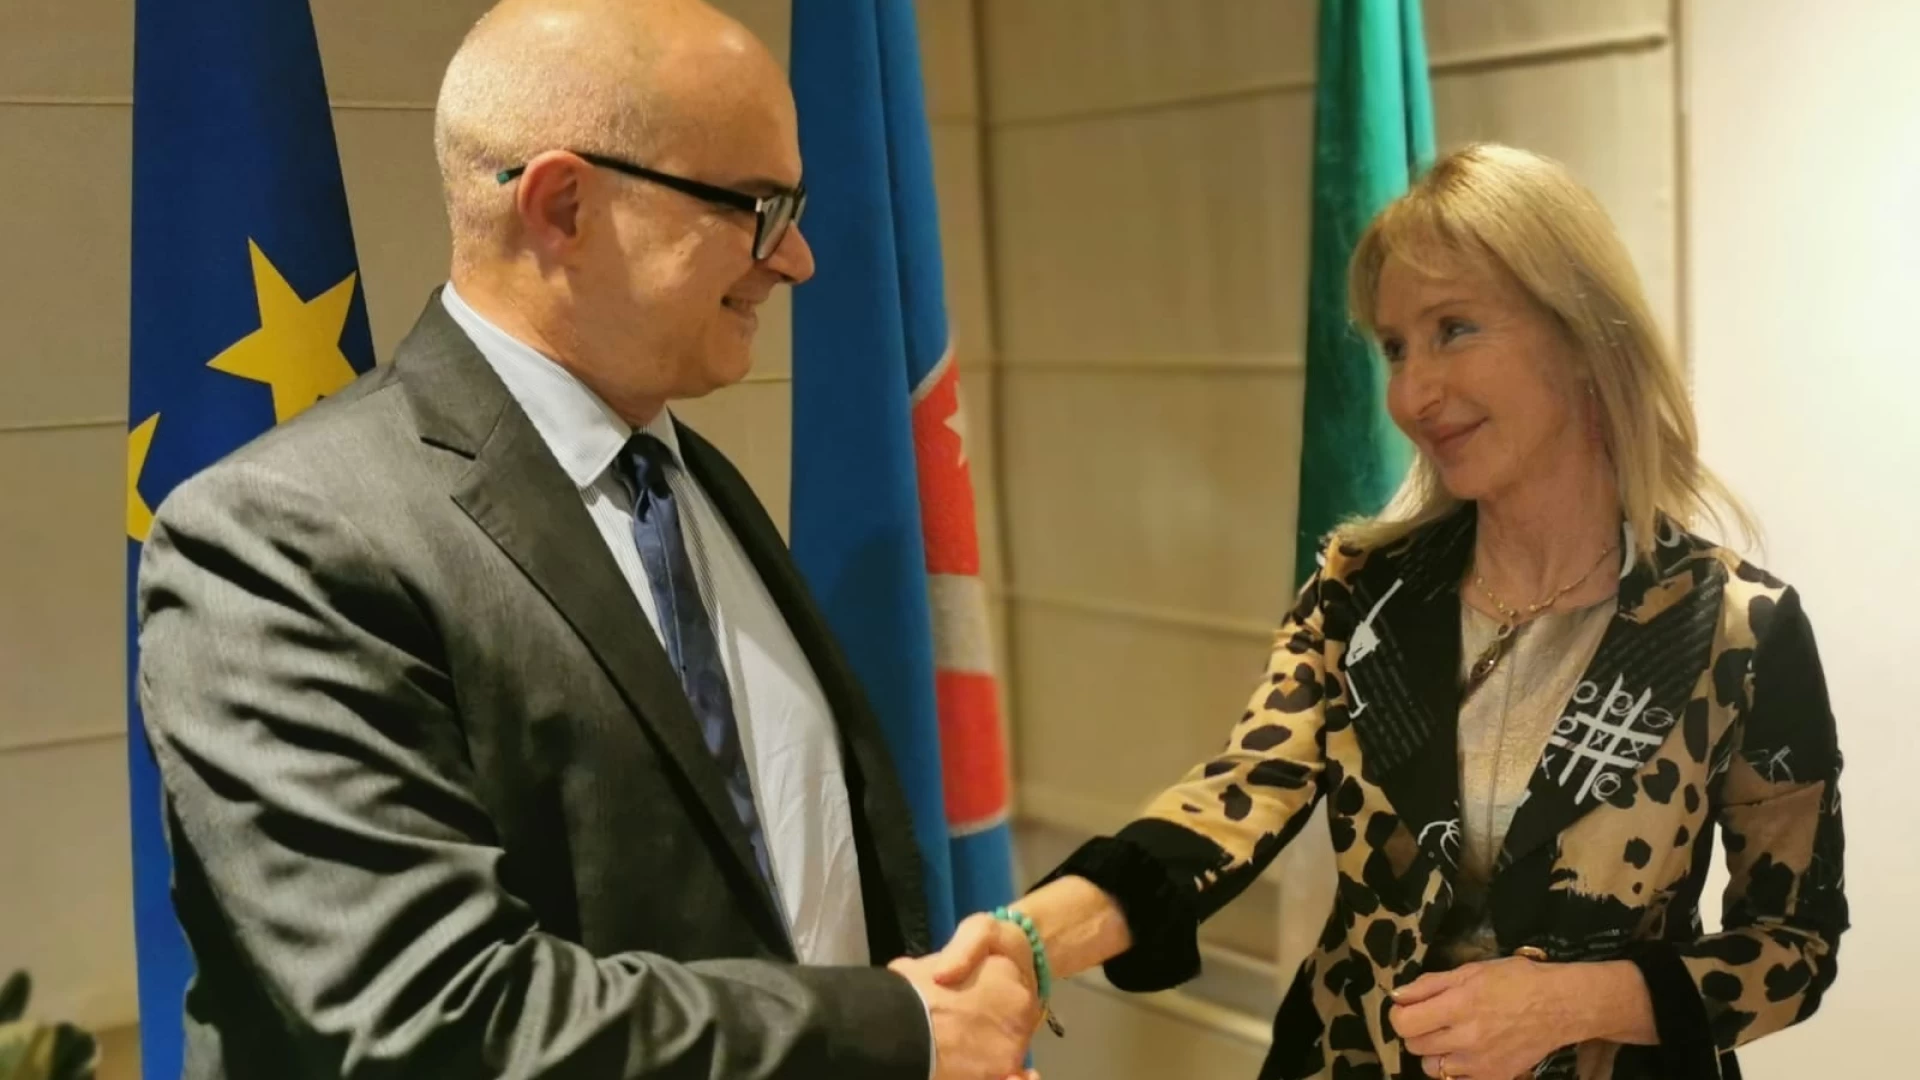 Presidente Toma riceve neo consigliera di Parità Maria Calabrese: “Per tutti un solido punto di riferimento”